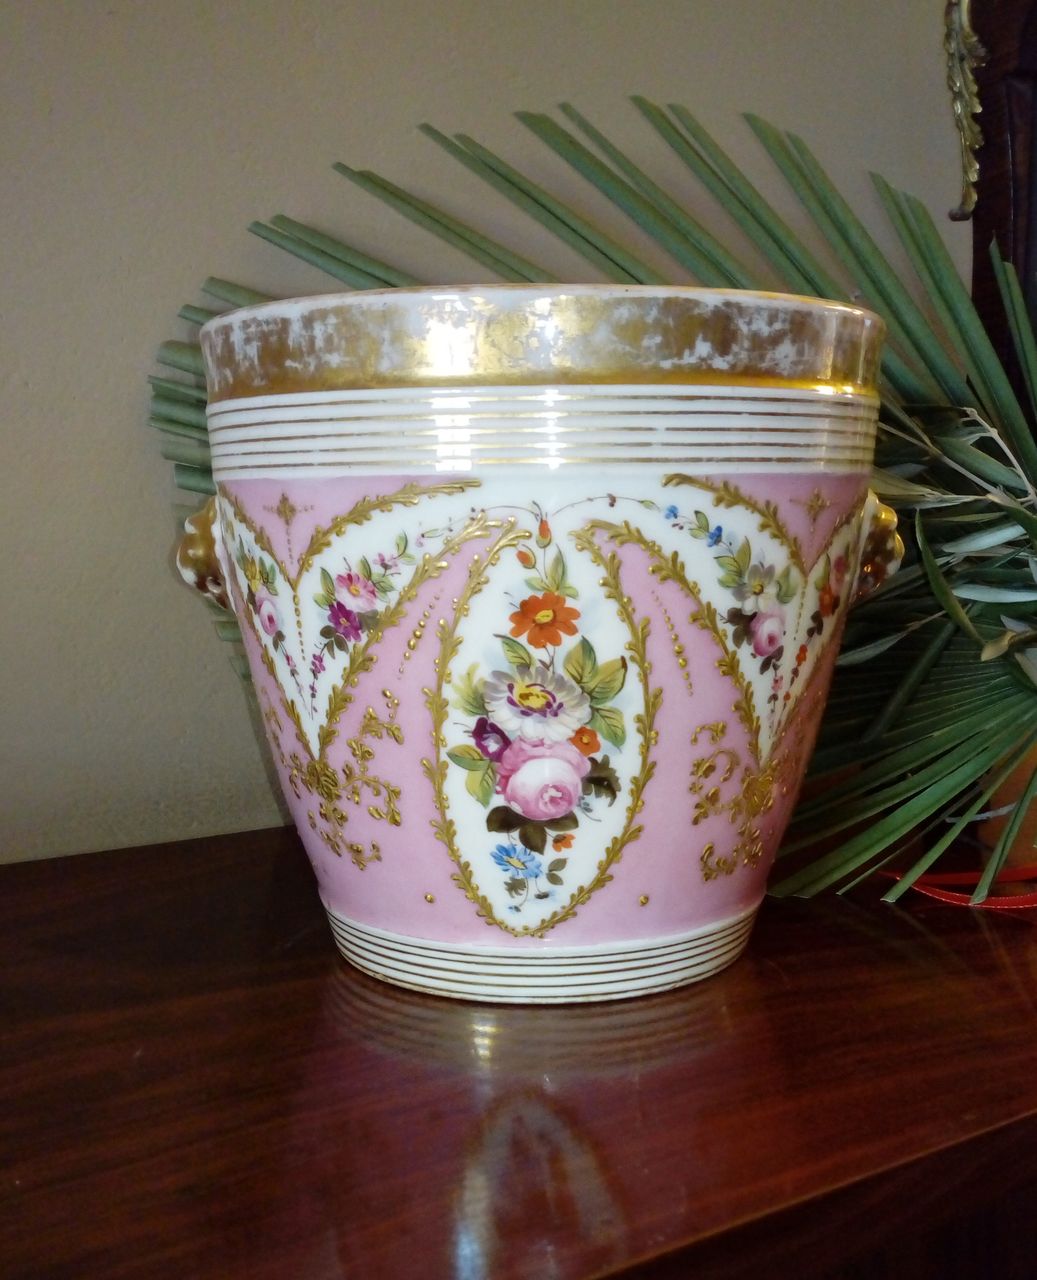 ghiarlande di fiori in policromia e dorate su fondo rosa. Al centro bouquet dipinto in policromia (portavasi, serie) - manifattura francese (XIX)